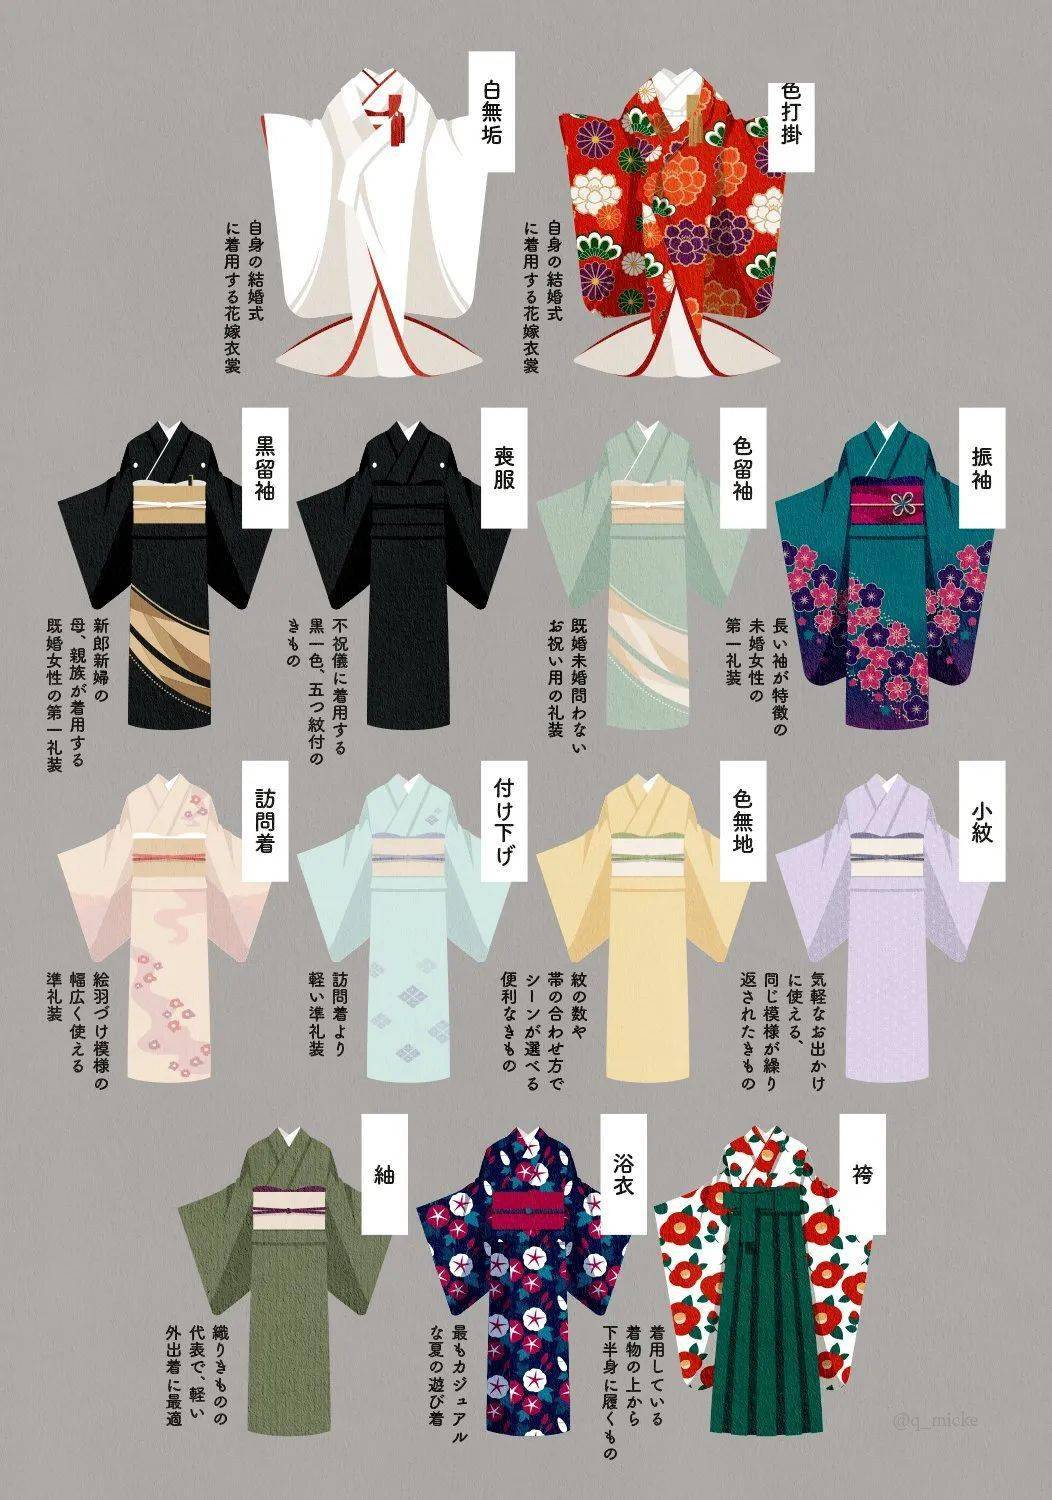 日本的和服有哪些种类,看完这张图就知道啦!